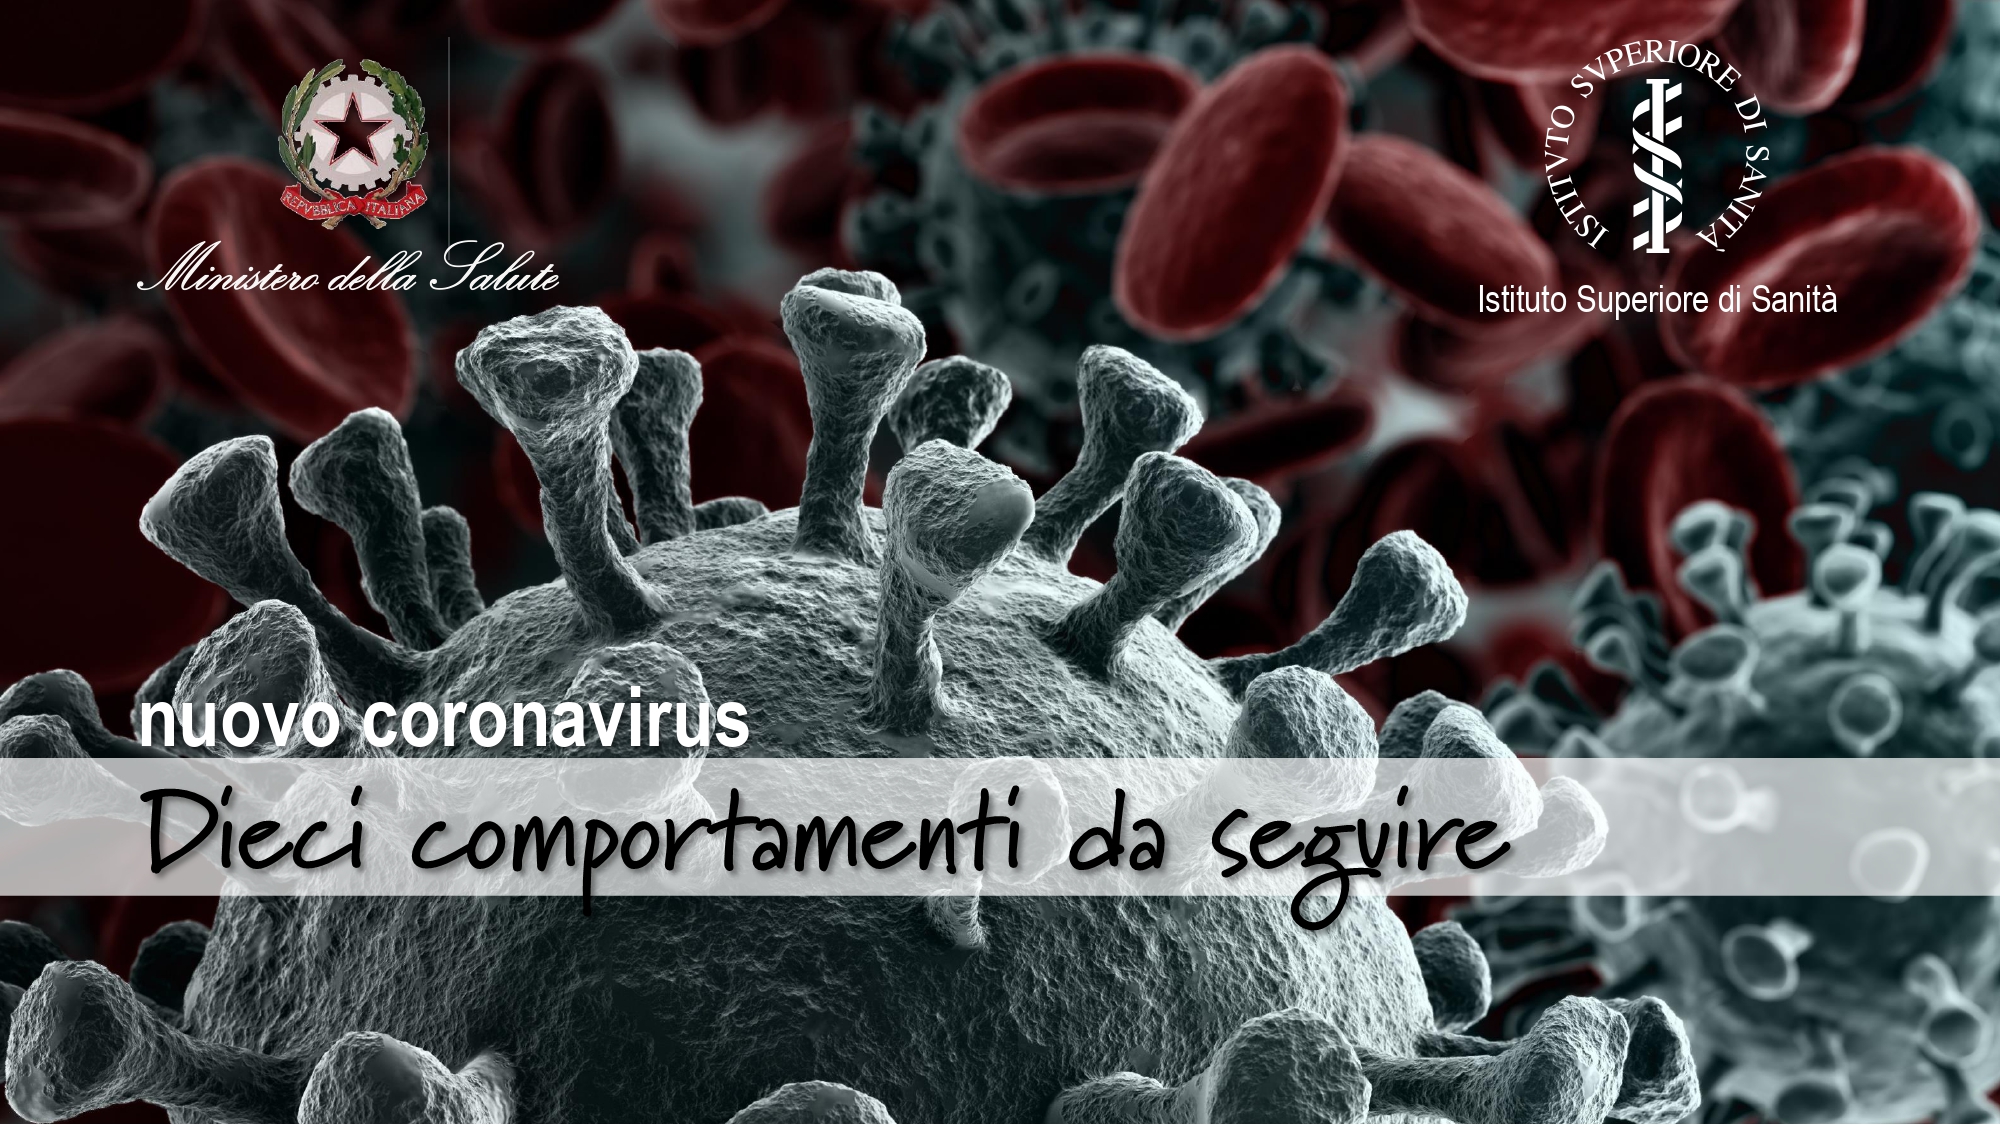 Nuovo Coronavirus - Dieci comportamenti da seguire_page-0001.jpg